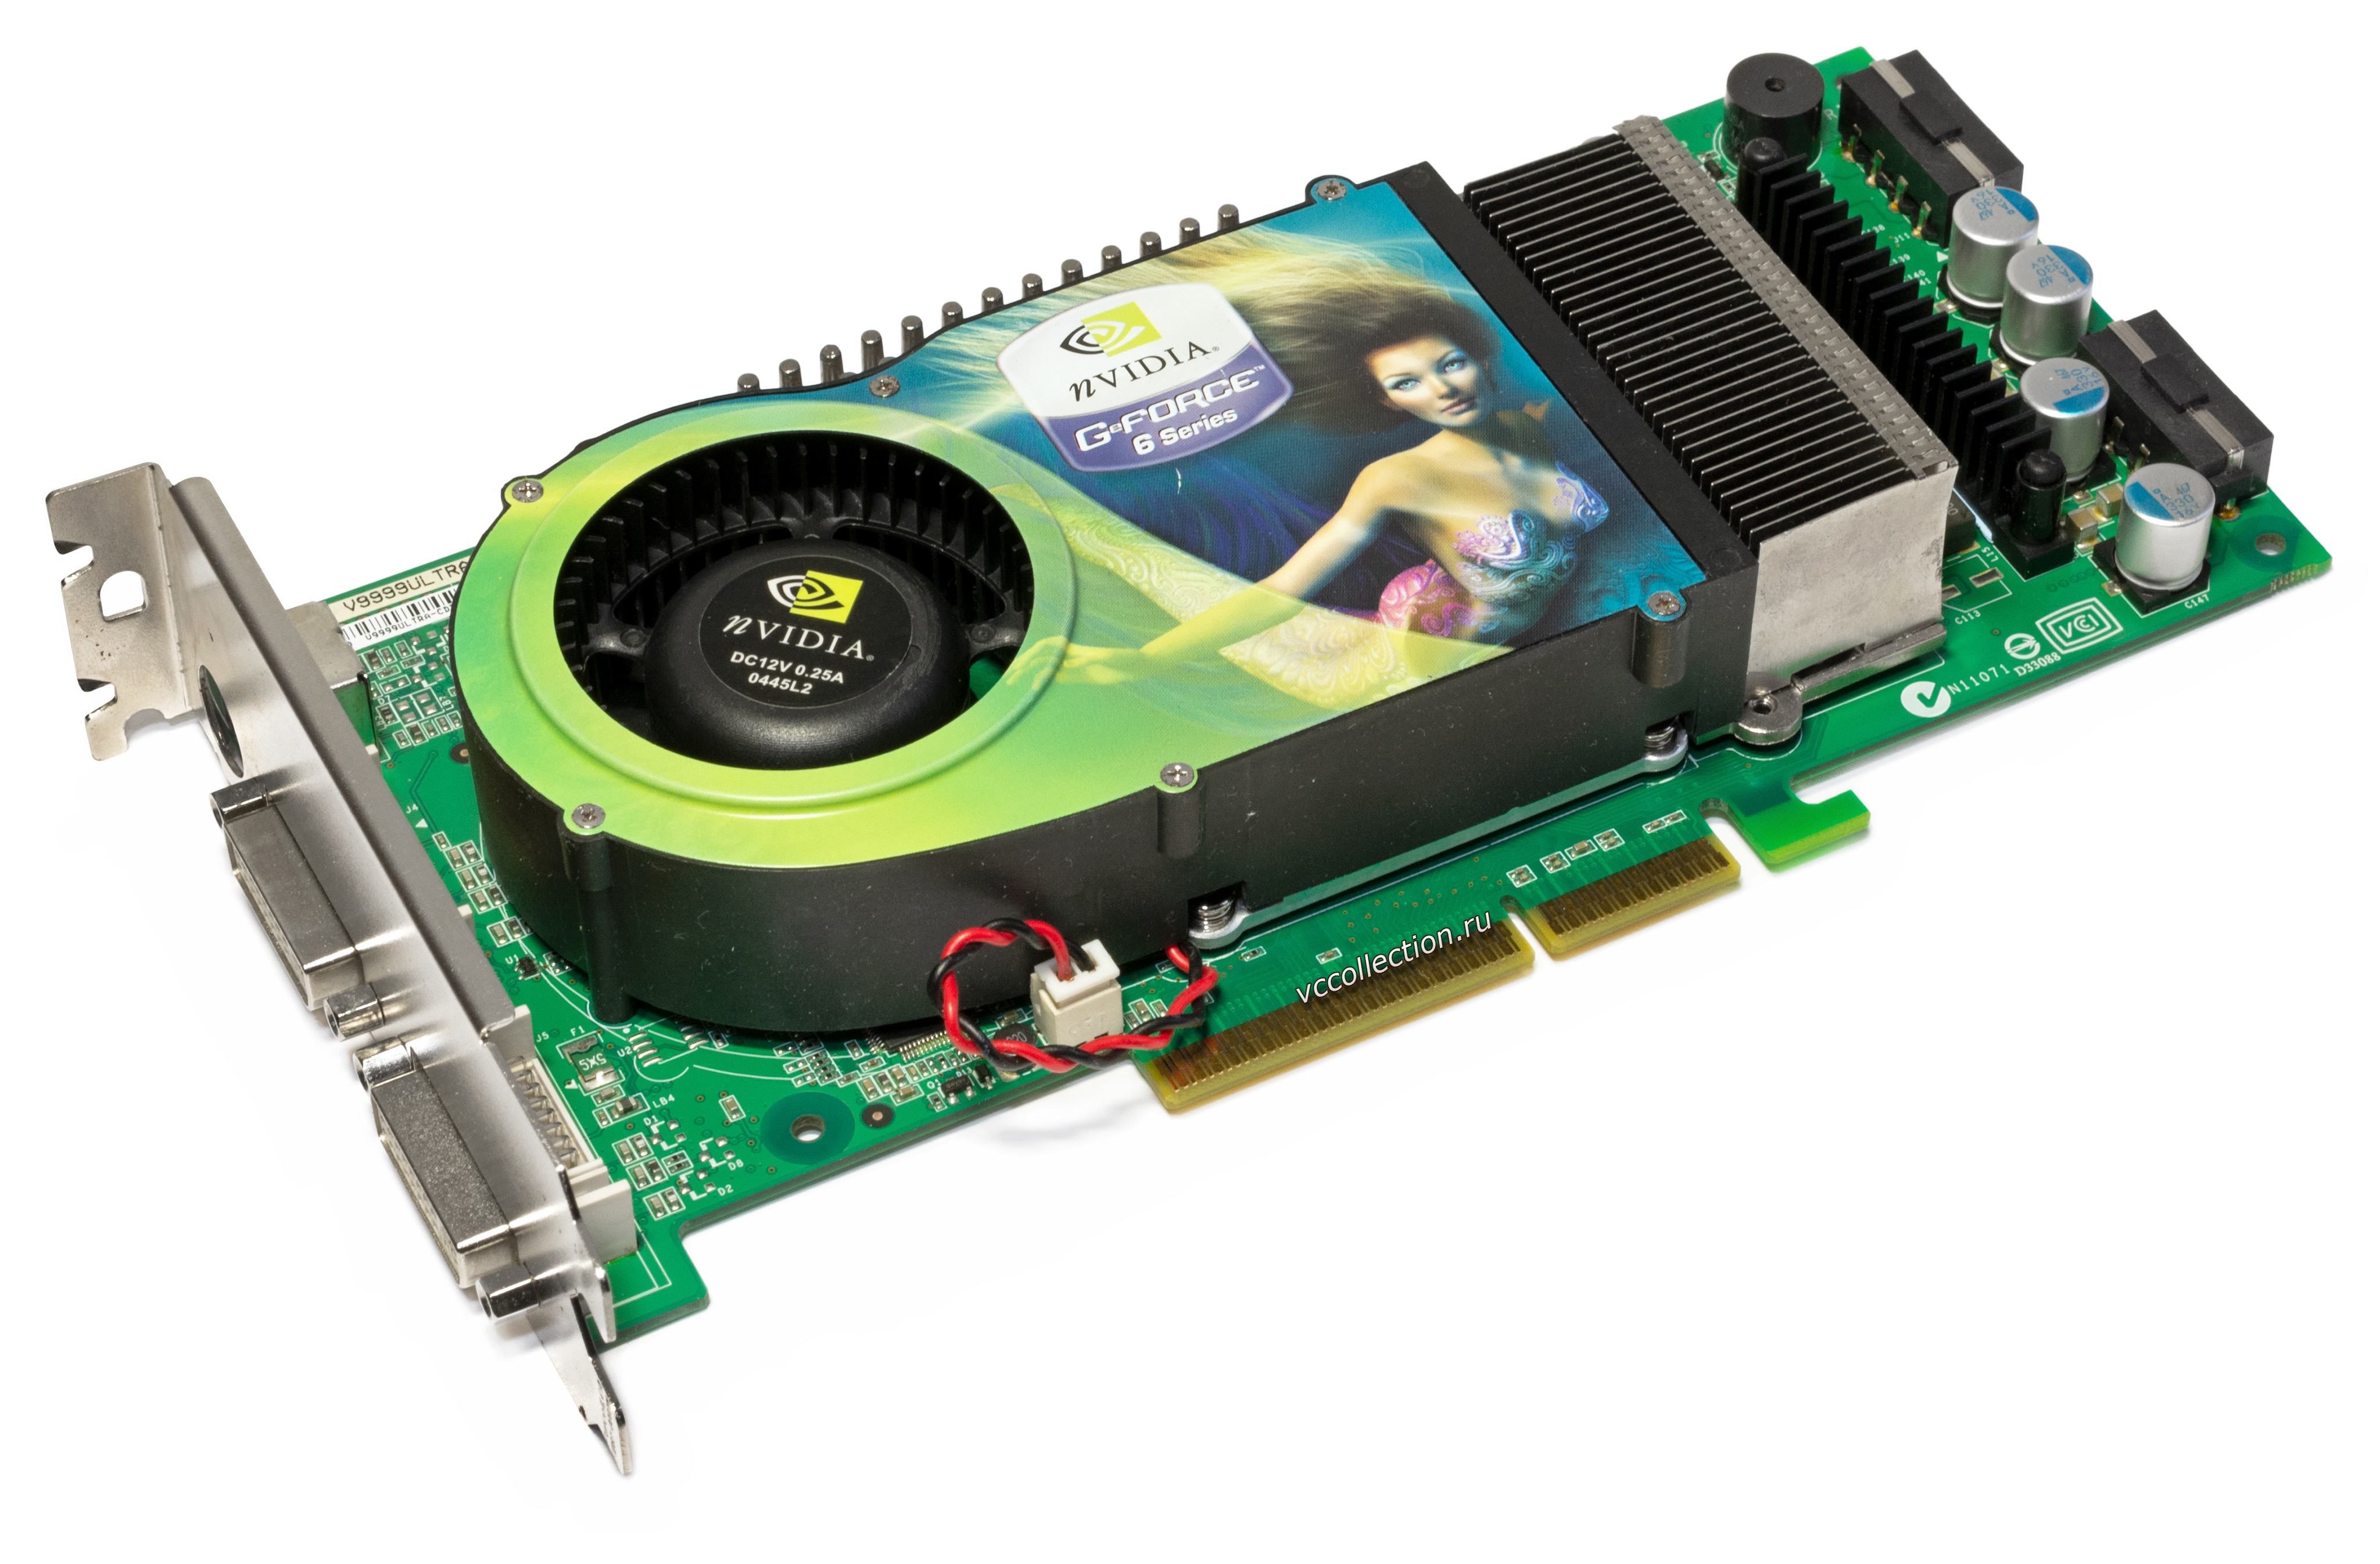 Nvidia geforce series. NVIDIA GEFORCE 6800 ASUS. Видеокарта GEFORCE 6800. GEFORCE 6800 Ultra. Видеокарта нвидиа джифорс 6800 gt.